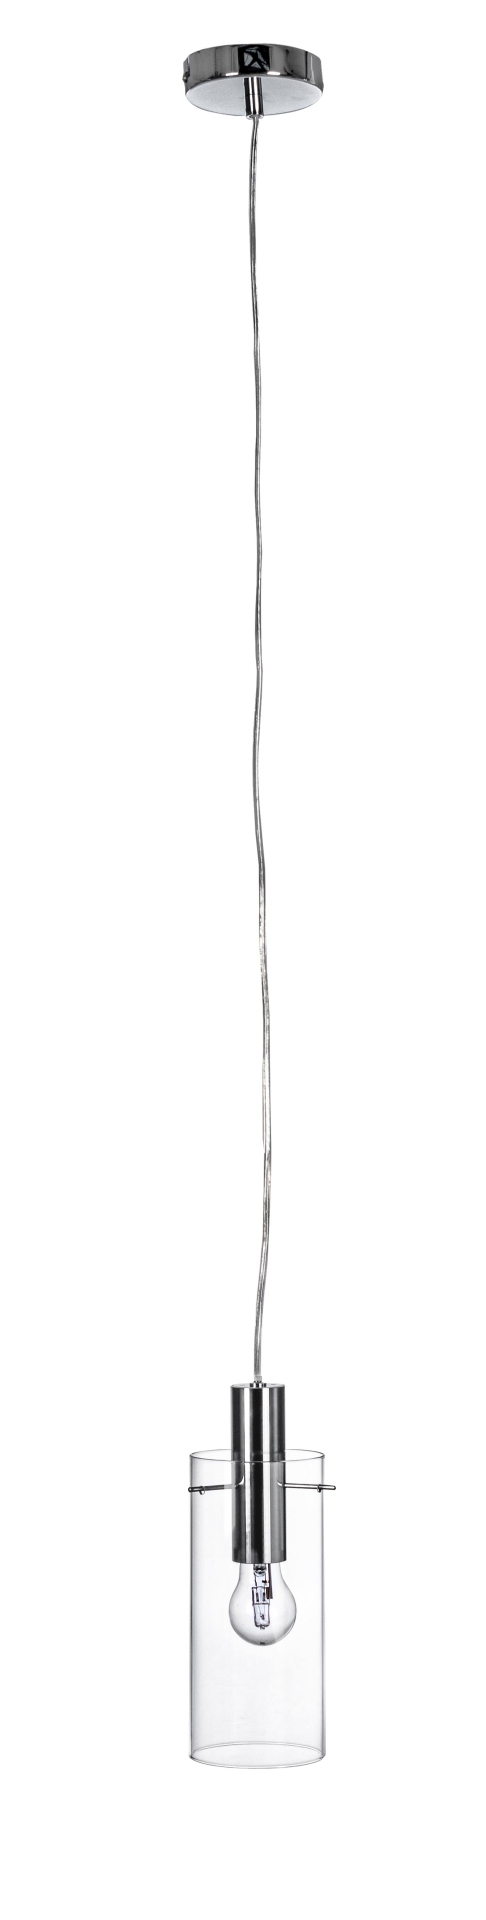 Die Hängeleuchte Aglow überzeugt mit ihrem modernen Design. Gefertigt wurde sie aus Metall, welches einen silberne Farbton besitzt. Der Lampenschirm ist aus Glas und ist klar. Die Lampe besitzt eine Höhe von 130 cm.